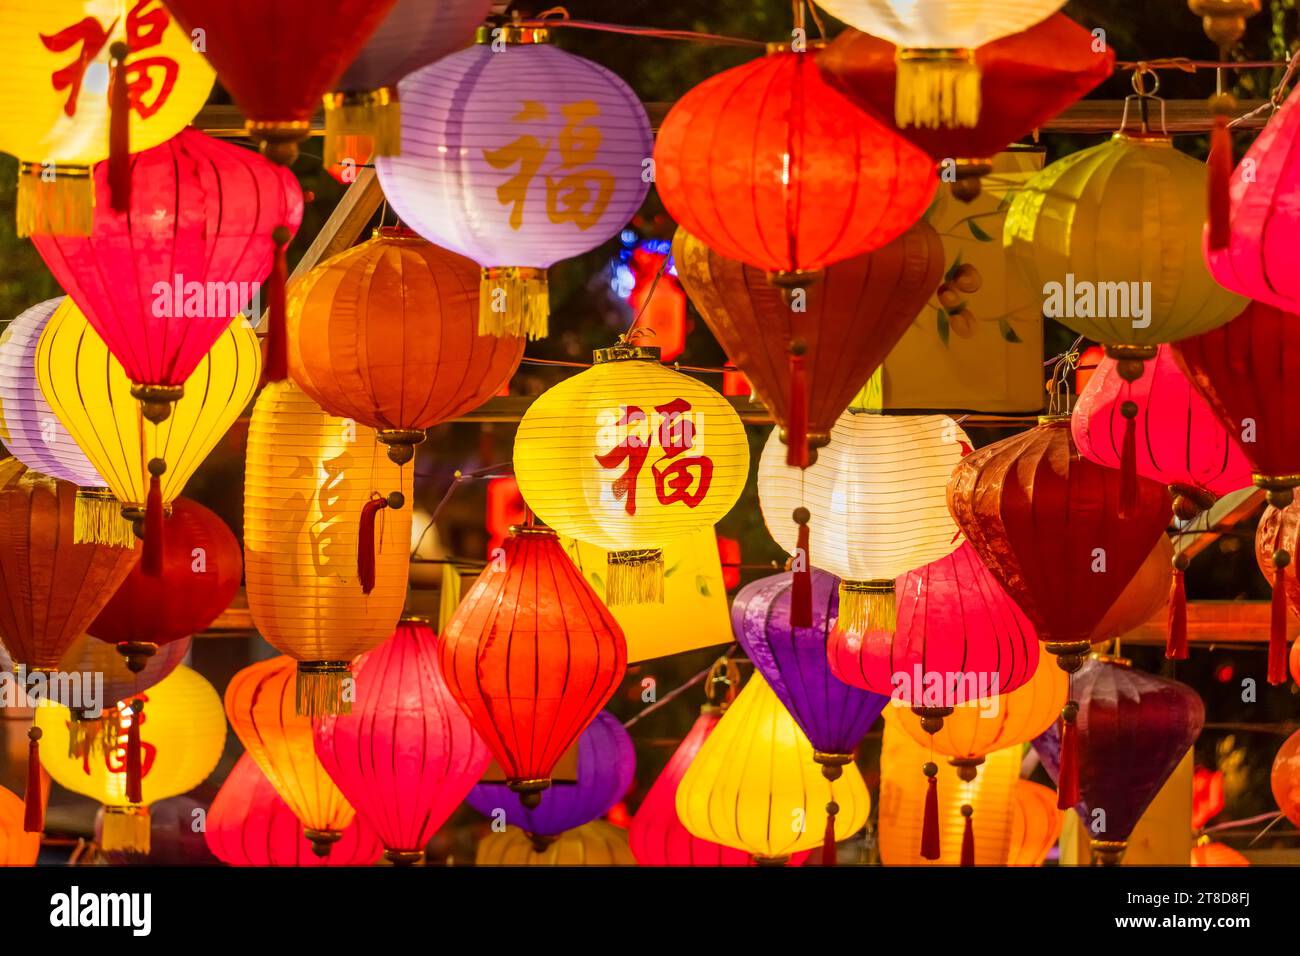 Décorations de lanterne chinoise dans la structure de maison chinoise historique vintage, calligraphie chinoise Traduction : bonne bénédiction pour la nouvelle année Banque D'Images